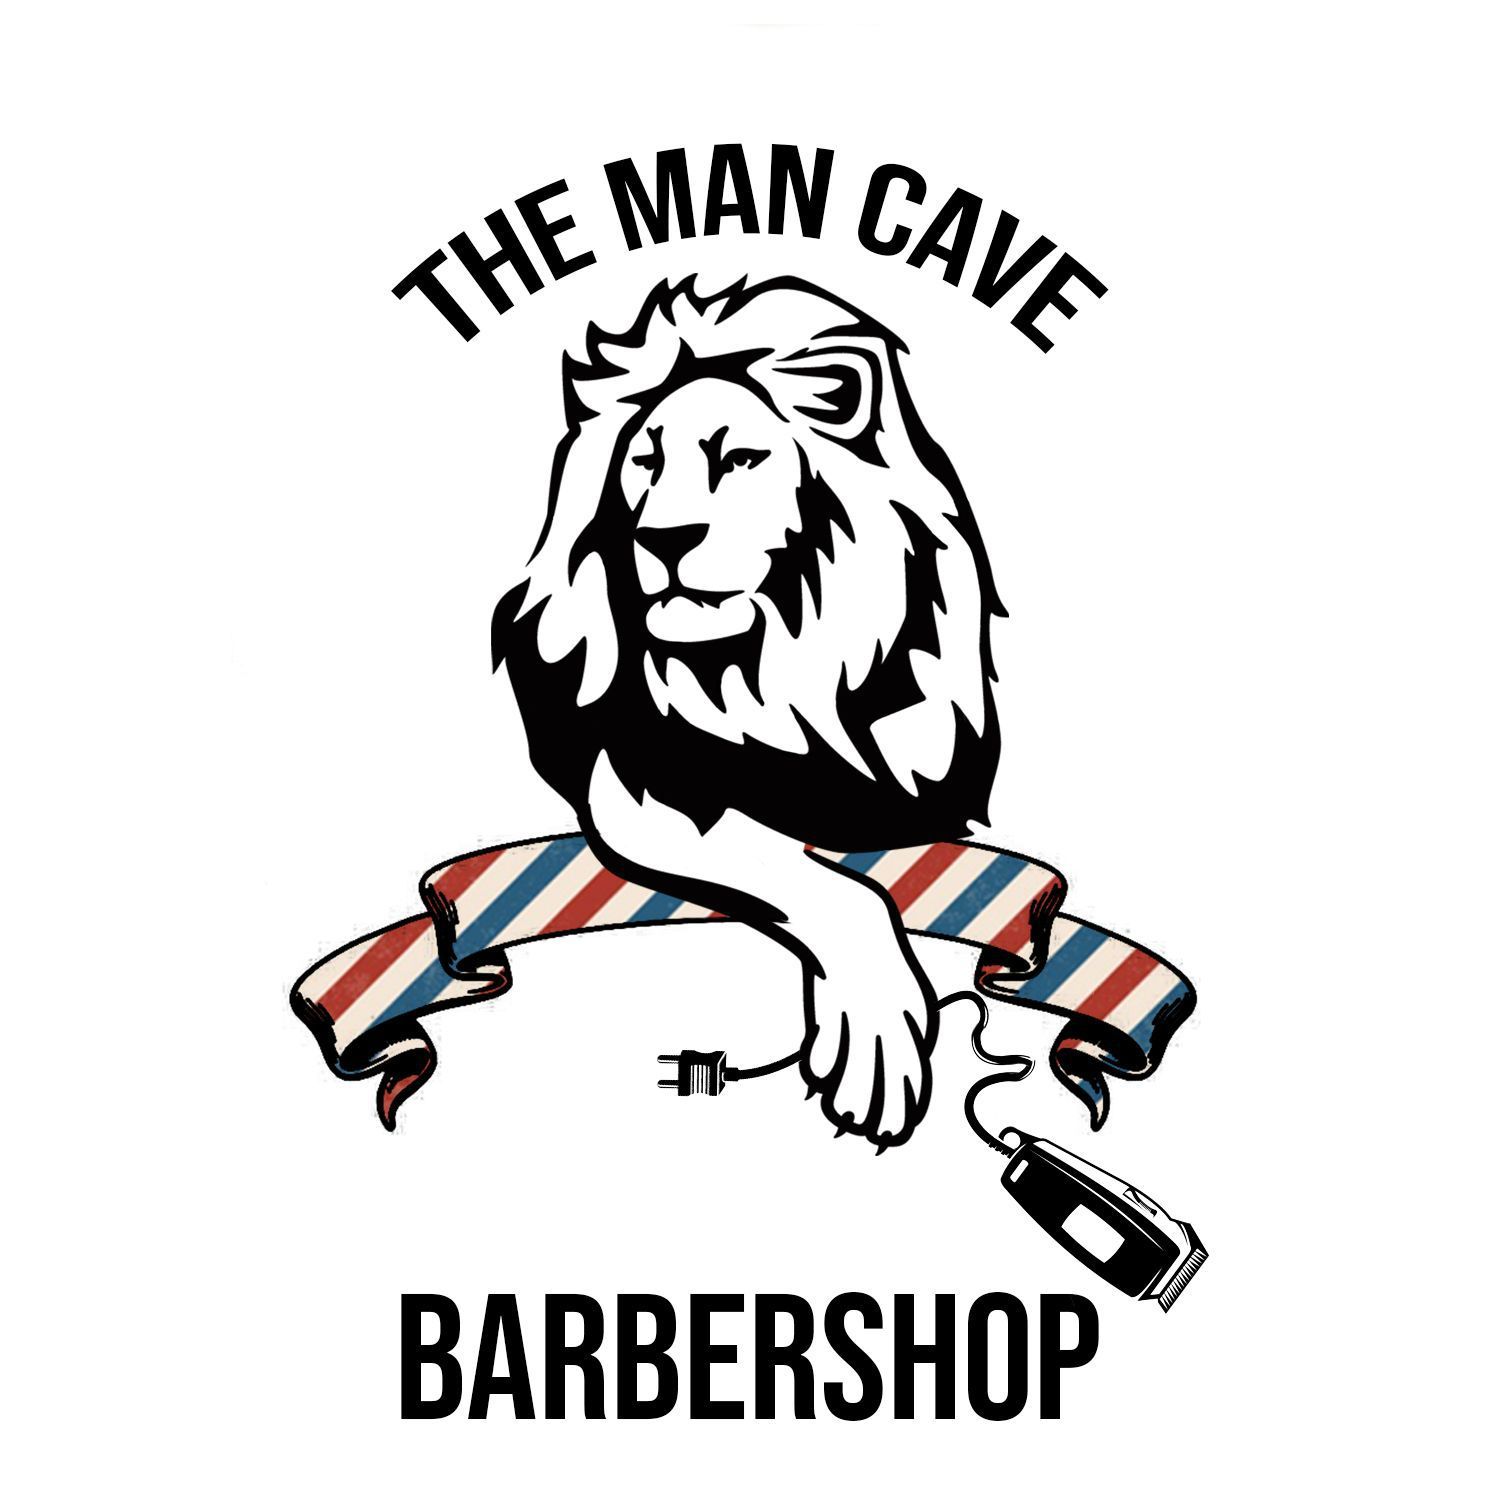 Man Cave Barbershop, 26 W Front St, Lillington, 27546